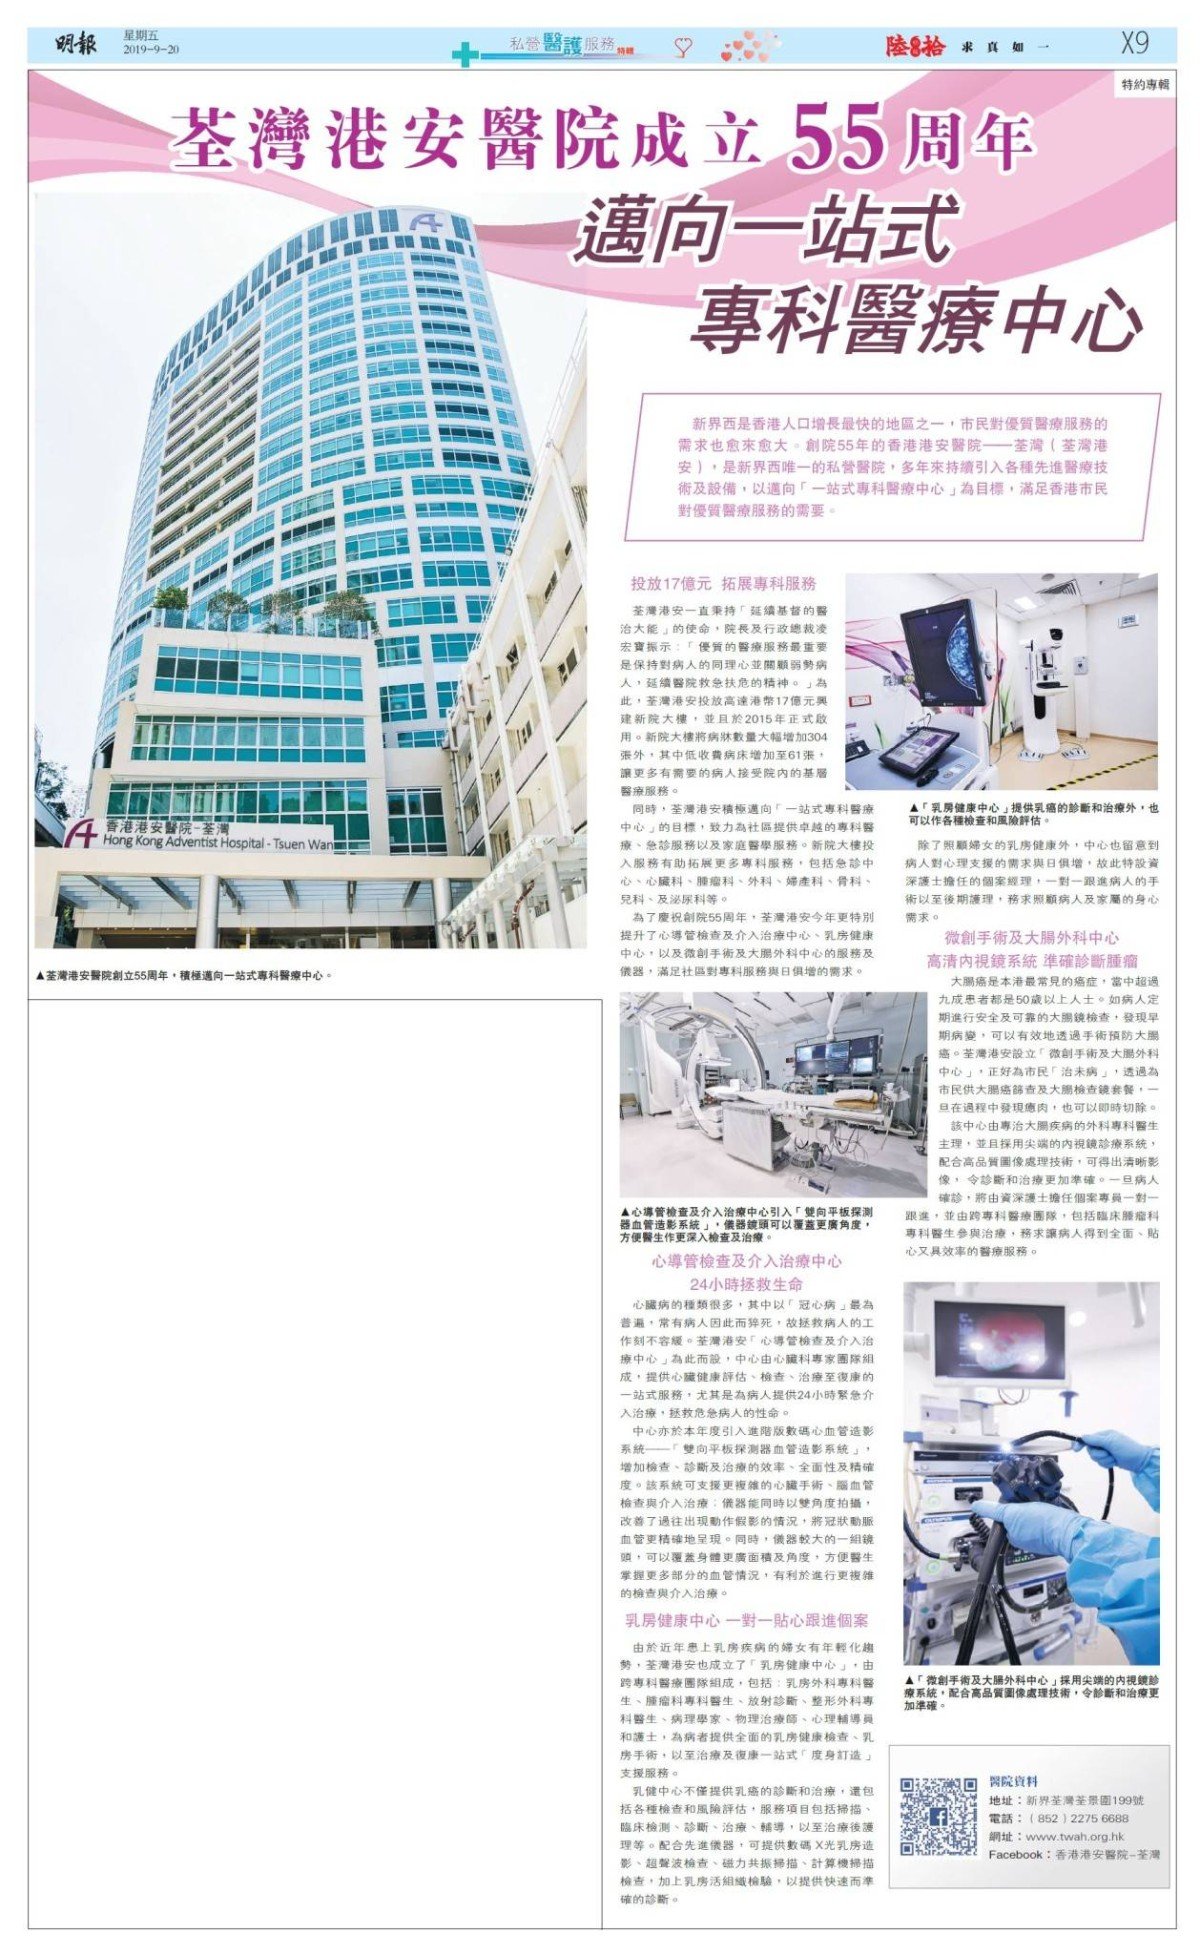 明報 - 香港港安醫院–荃灣慶祝55周年